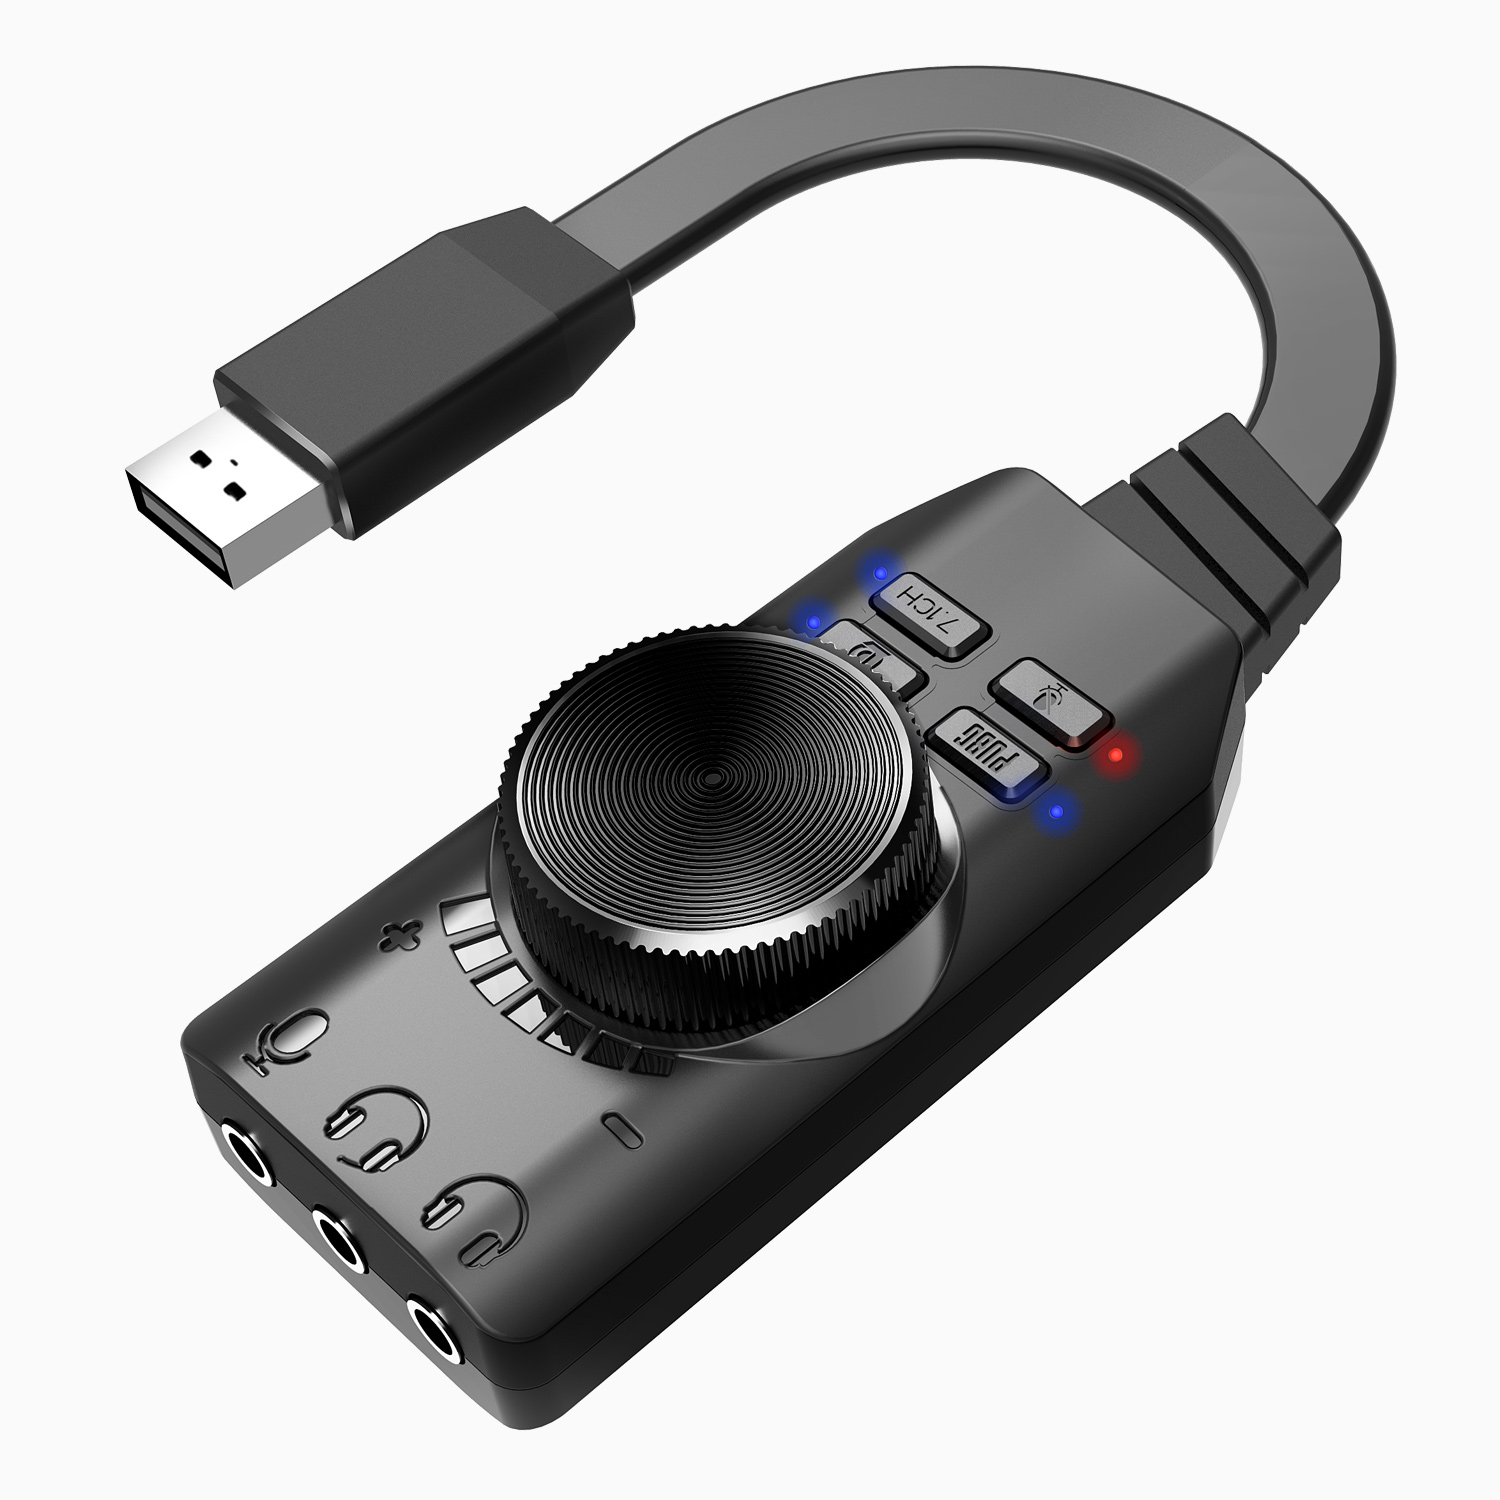 Sound card âm thanh 7.1 cho máy tính PC chuyên game GS3 - Hàng Chính hãng